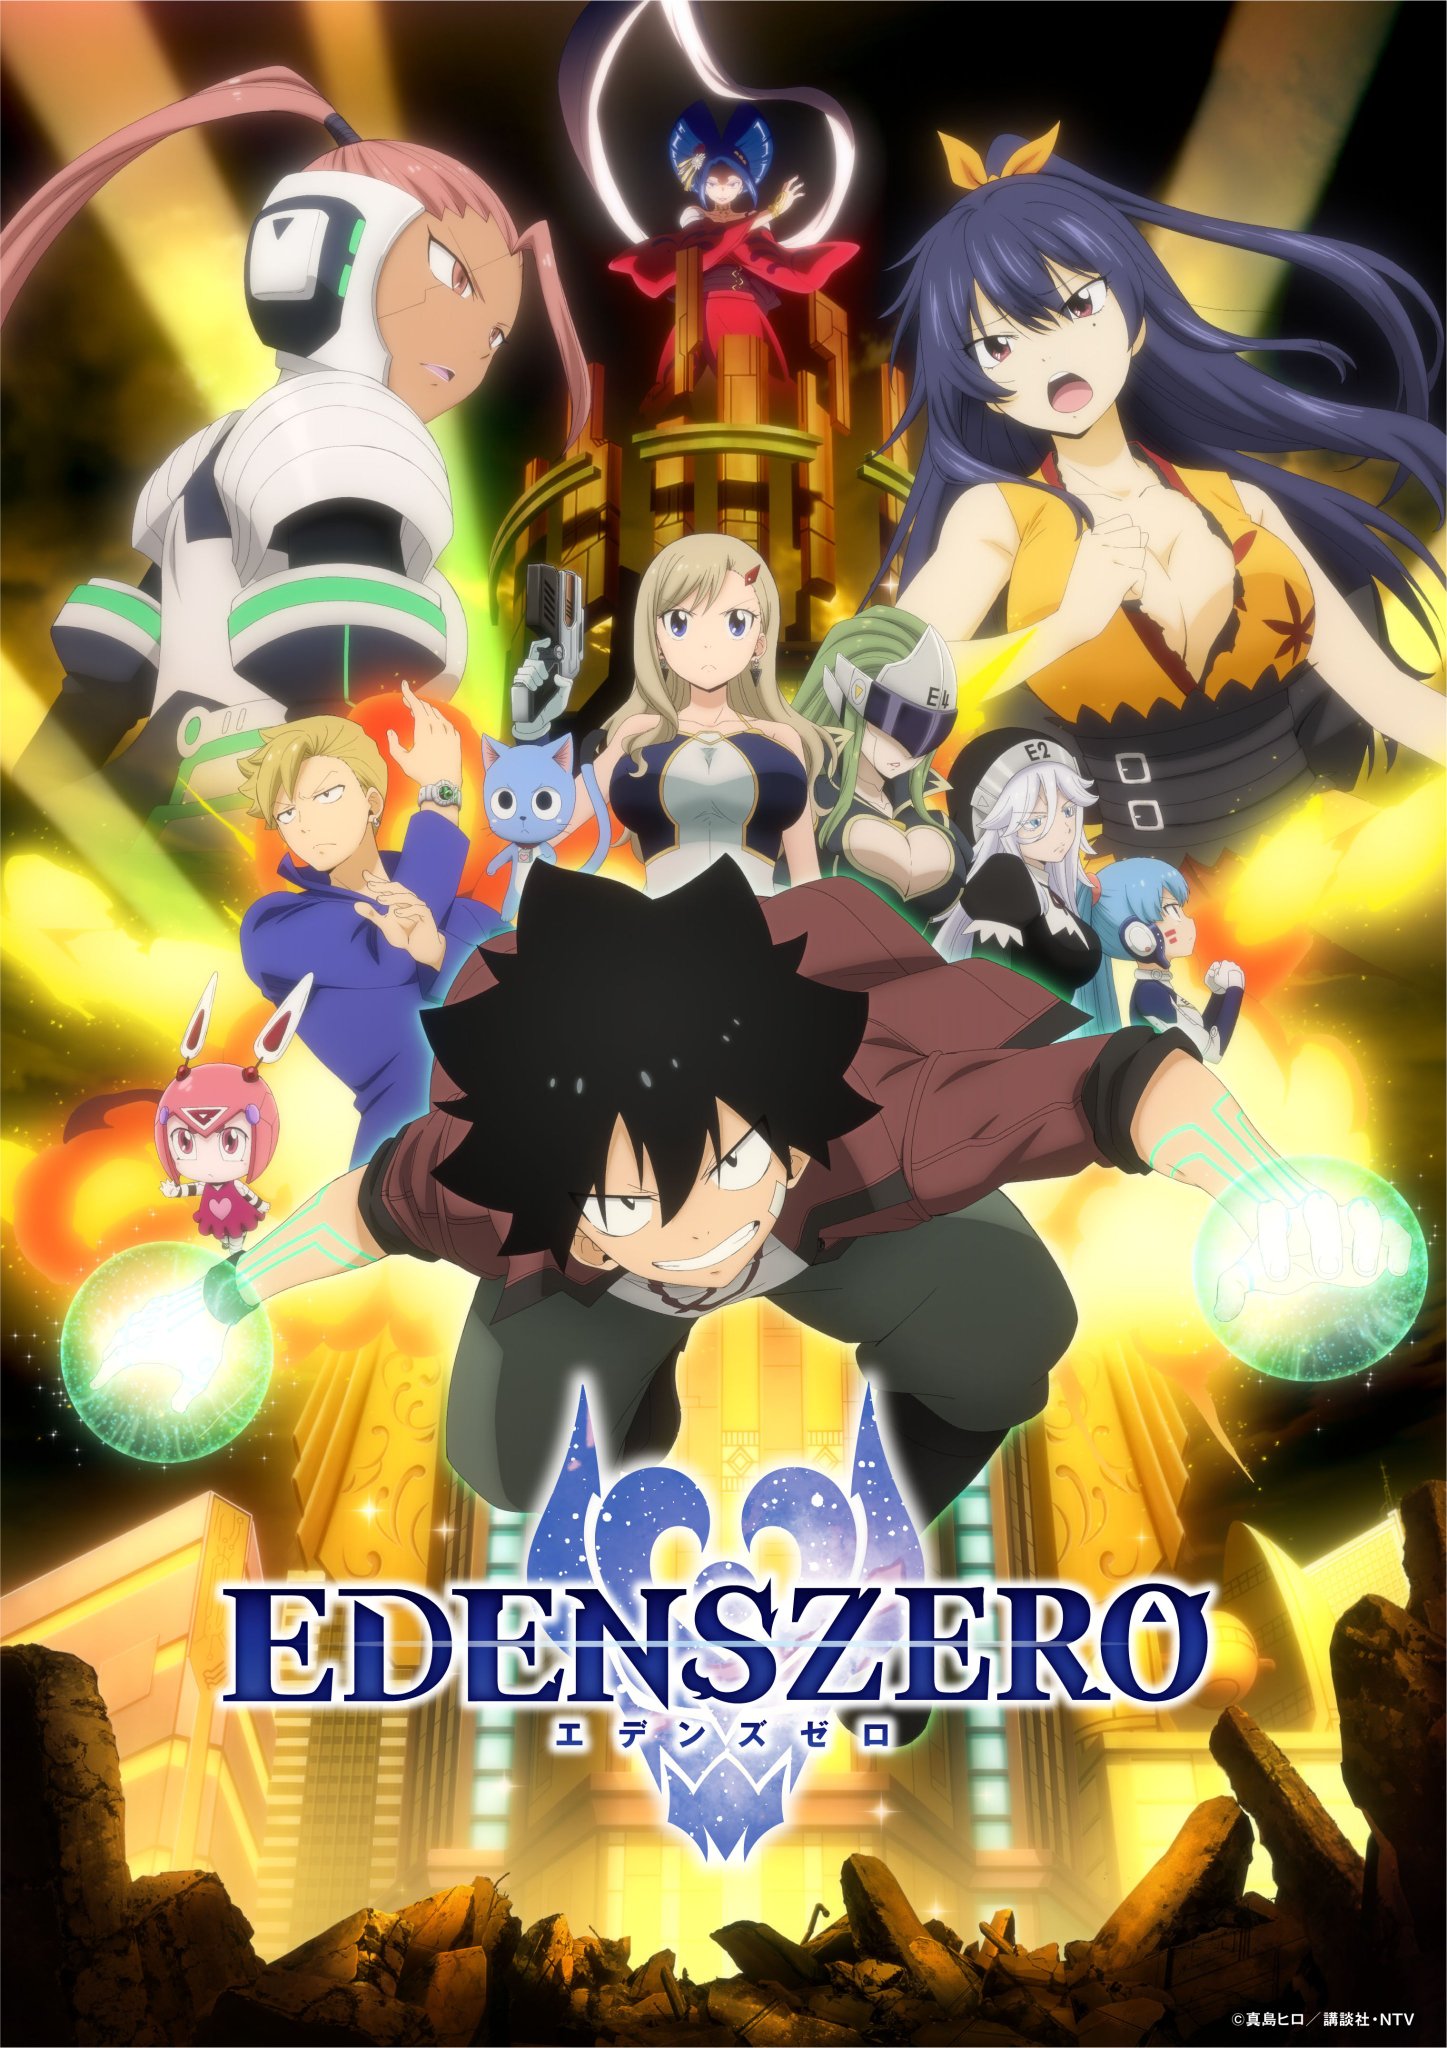 Faleceu Yuuji Suzuki, diretor do anime Edens Zero